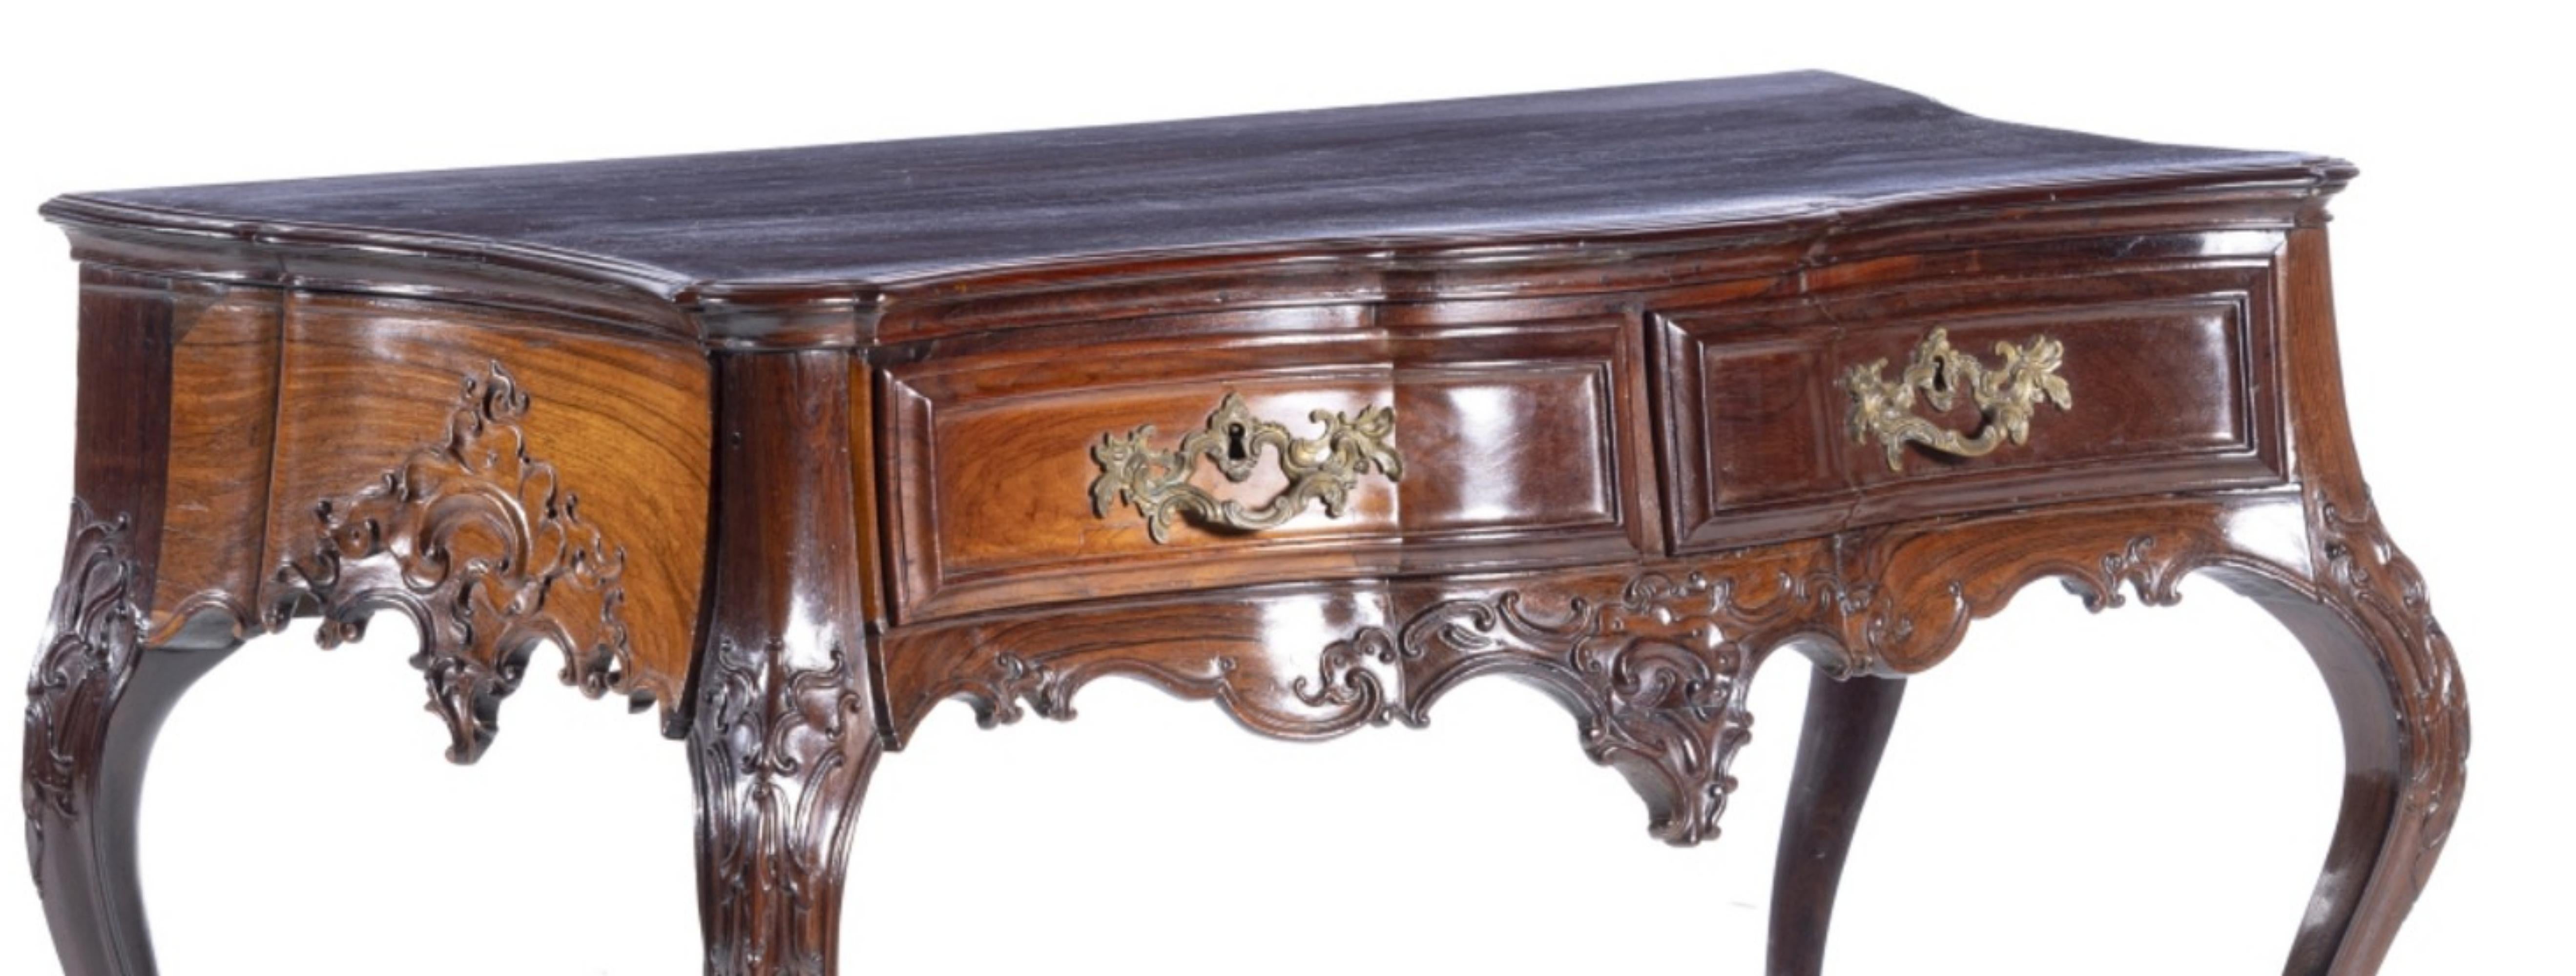 Renaissance Important Portuguese Backing Table D. José 18th Century Rosewood For Sale